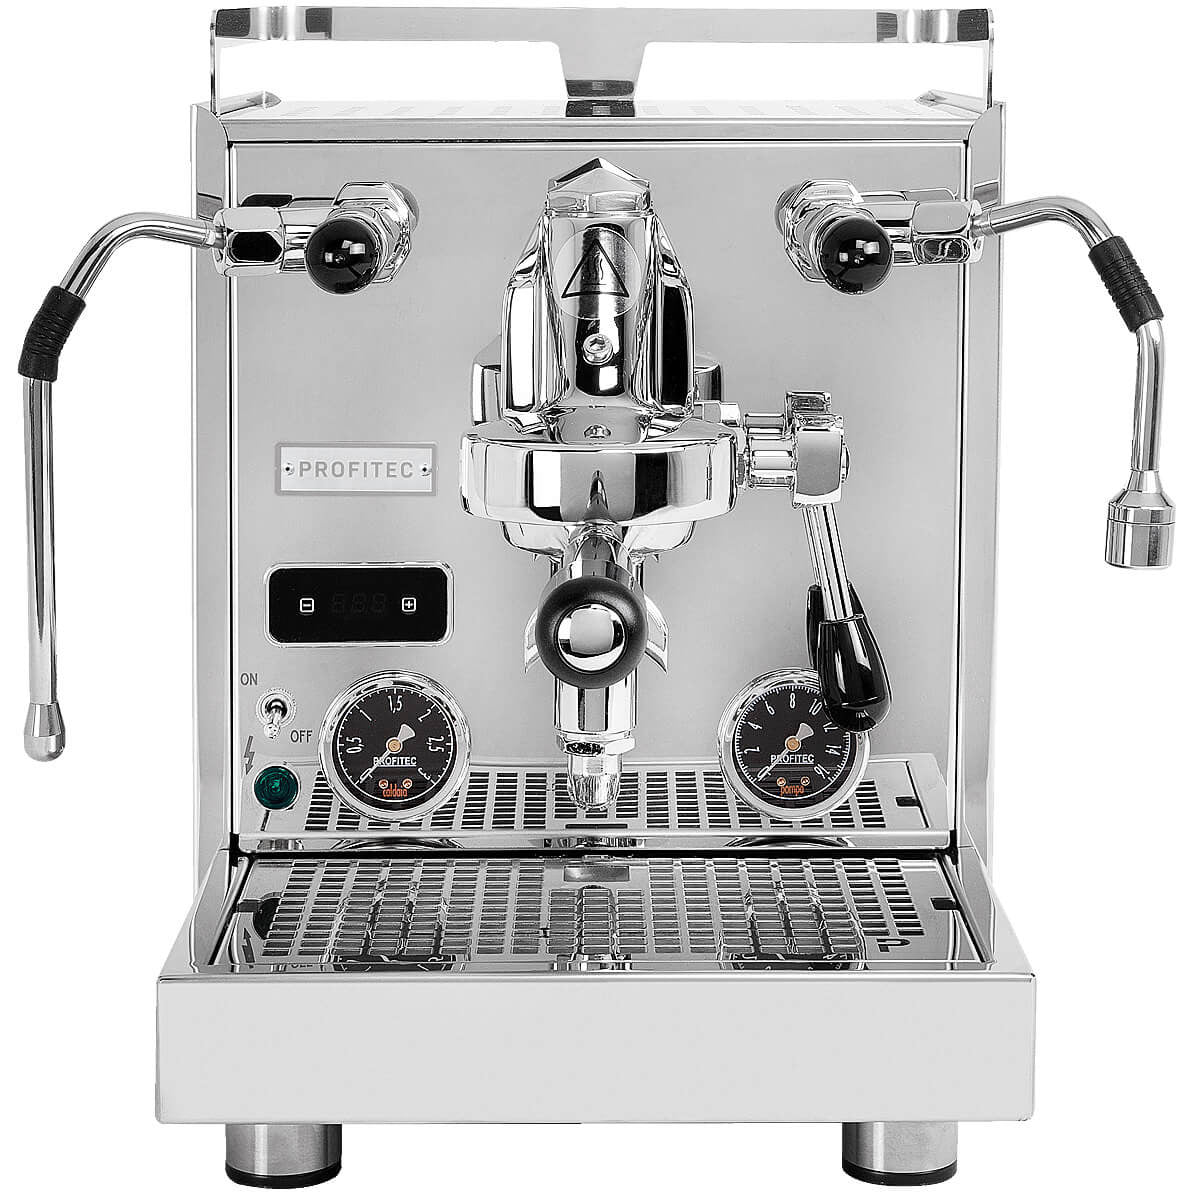 Profitec PRO 600 mit Kipphebeln und Fast Heat Up, DUALBOILER-SIEBTRÄGERMASCHINE MIT PID-STEUERUNG Espressomaschinen Profitec    - Rheinland.Coffee